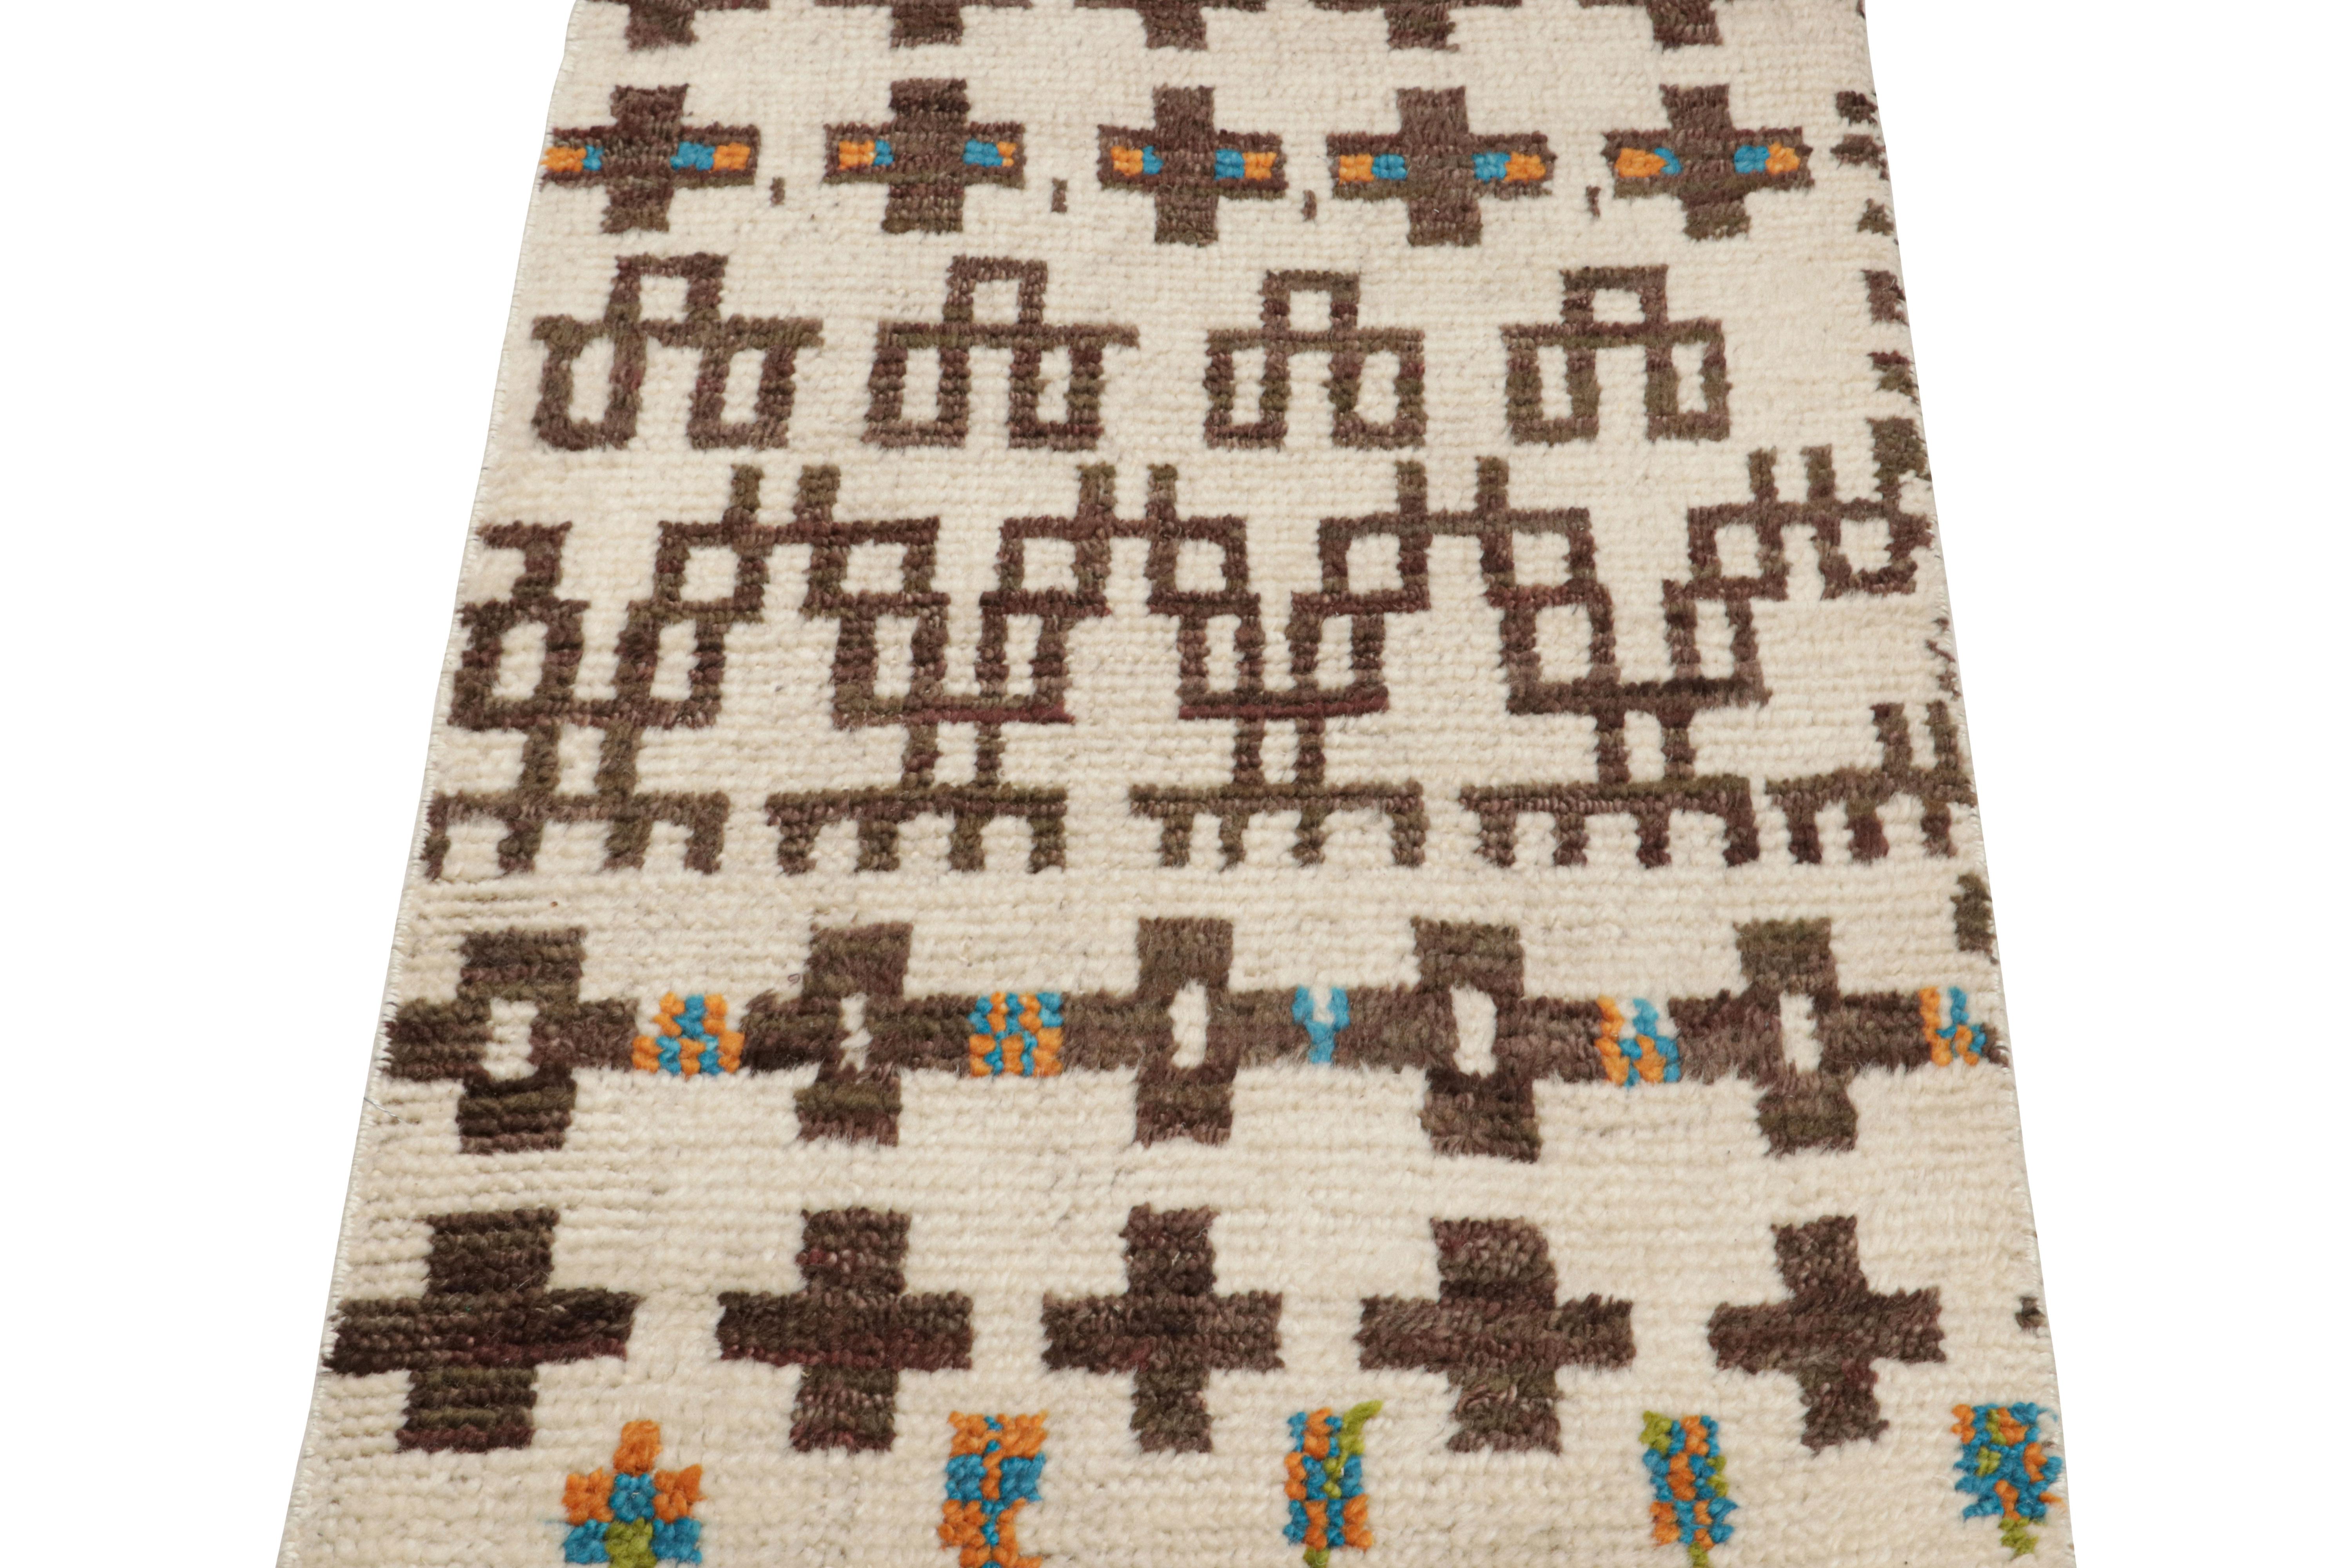 Noué à la main en laine et en soie, ce tapis marocain 2x3 présente une texture nervurée inspirée de pièces de style boucherouite et de textiles similaires dans le style tribal berbère primitiviste. 

Sur le Design : 

Les connaisseurs peuvent